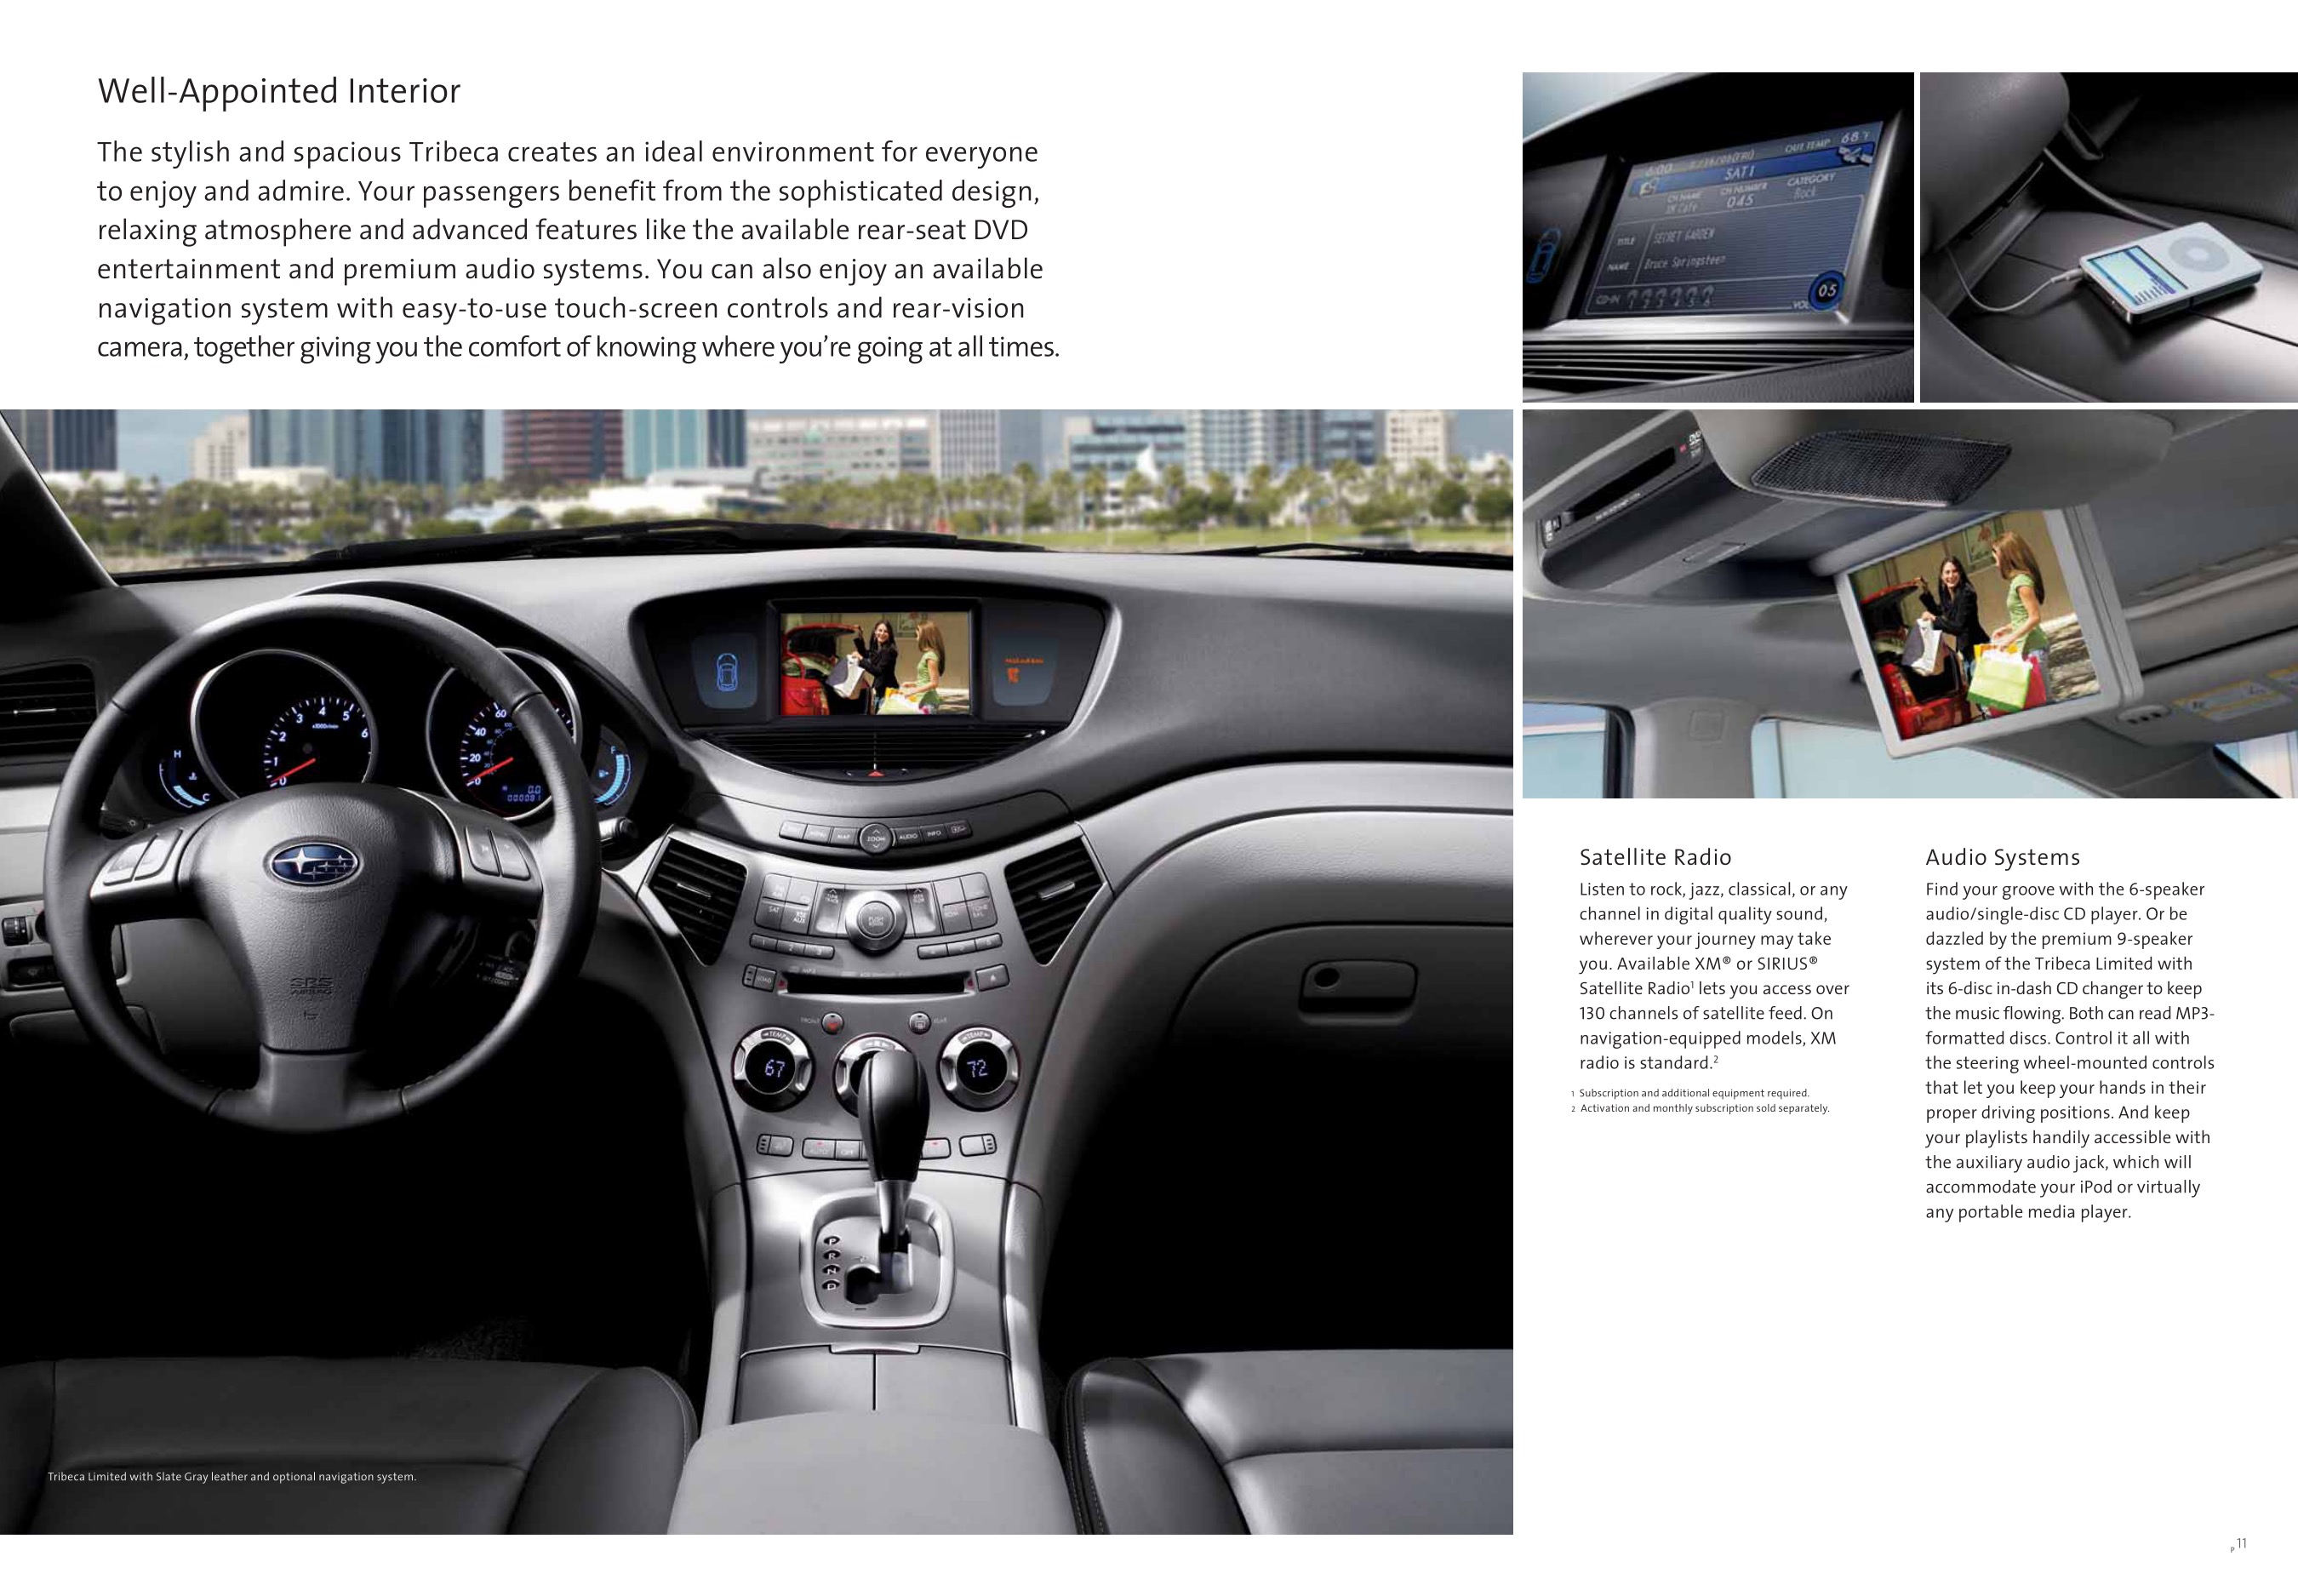 2009 Subaru Tribeca Brochure Page 5